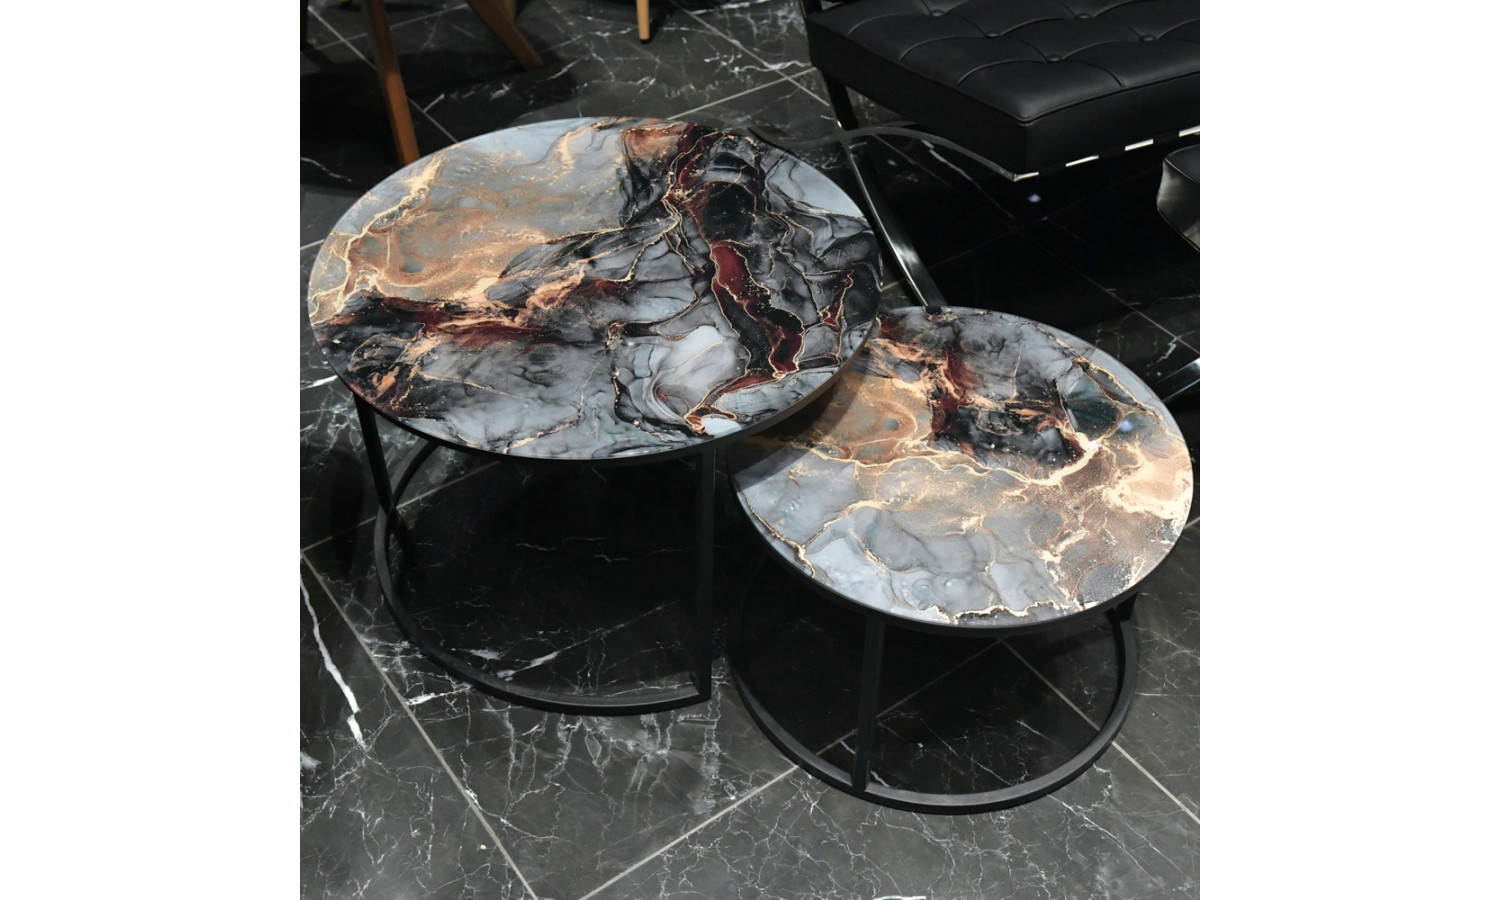 Набор кофейных столиков Tango космический с чёрными ножками, 2шт